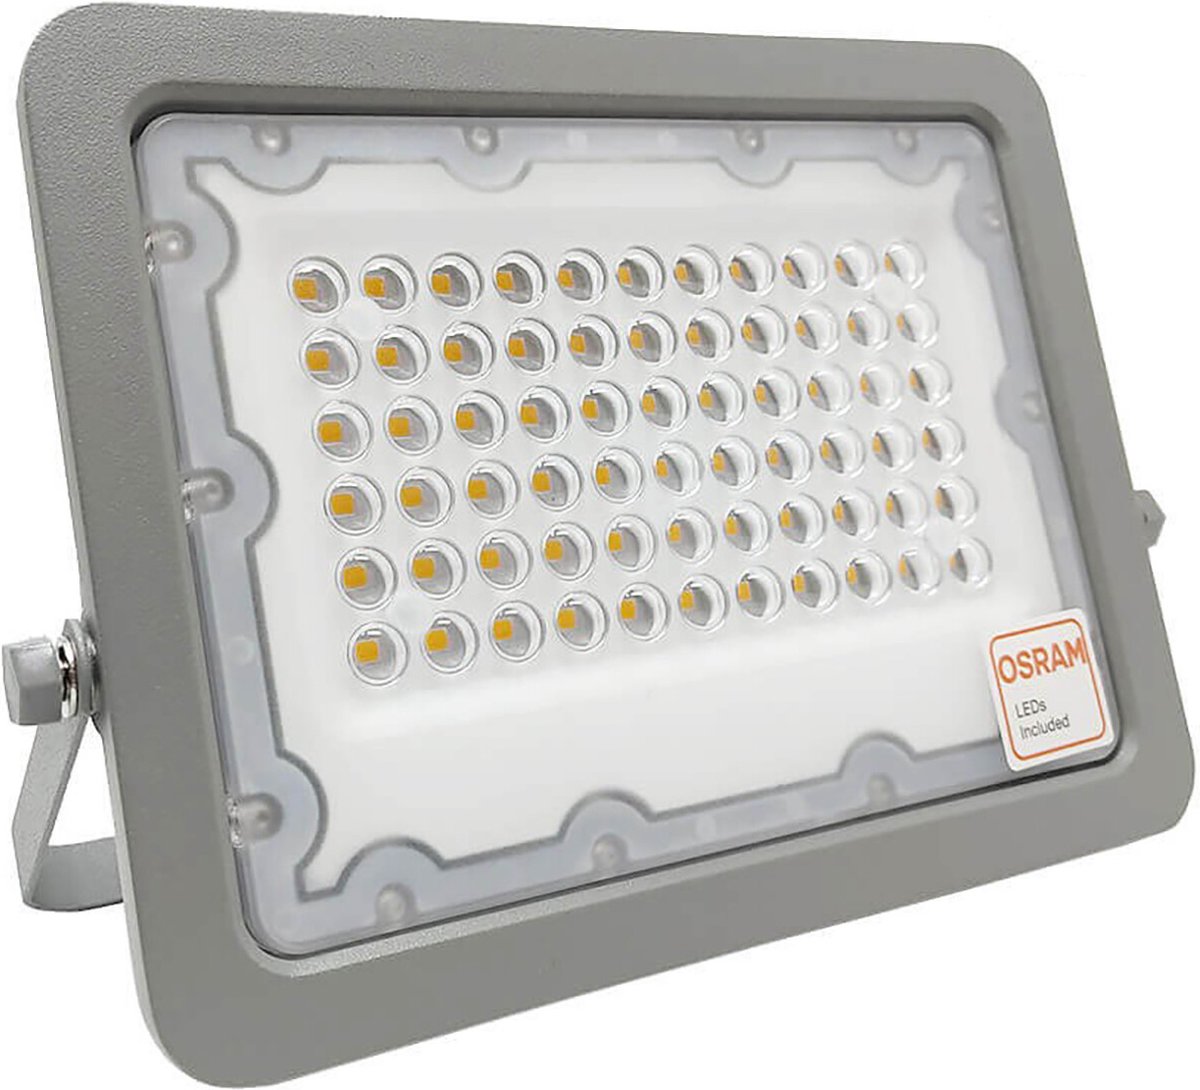 LED Bouwlamp - 50 Watt - LED Schijnwerper - Natuurlijk Wit 4000K - Waterdicht IP65 - 120LM/W - Flikkervrij - OSRAM LEDs